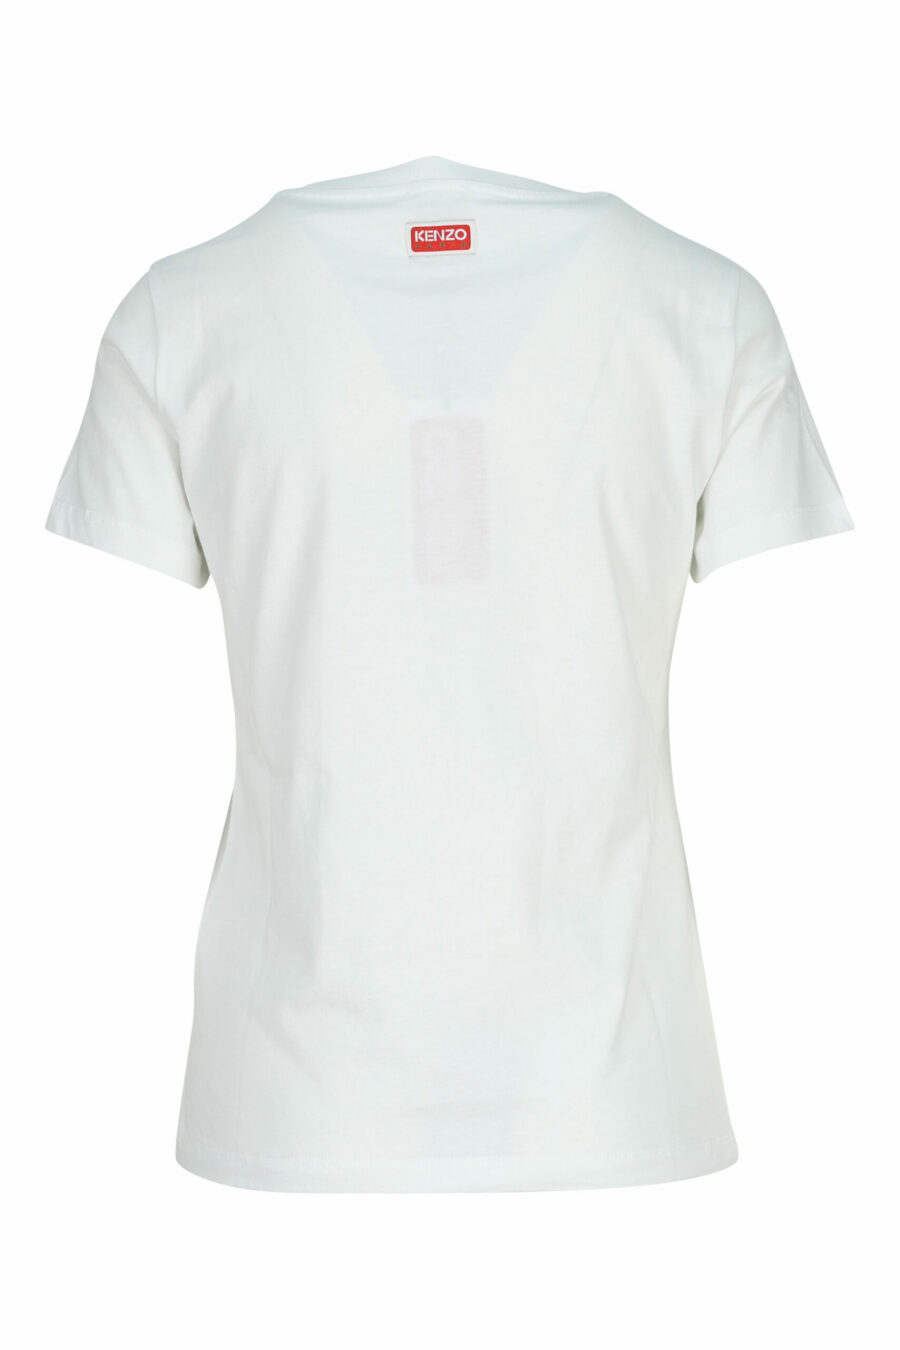 T-shirt blanc avec mini logo "kenzo elephant" - 3612230620117 1 scaled